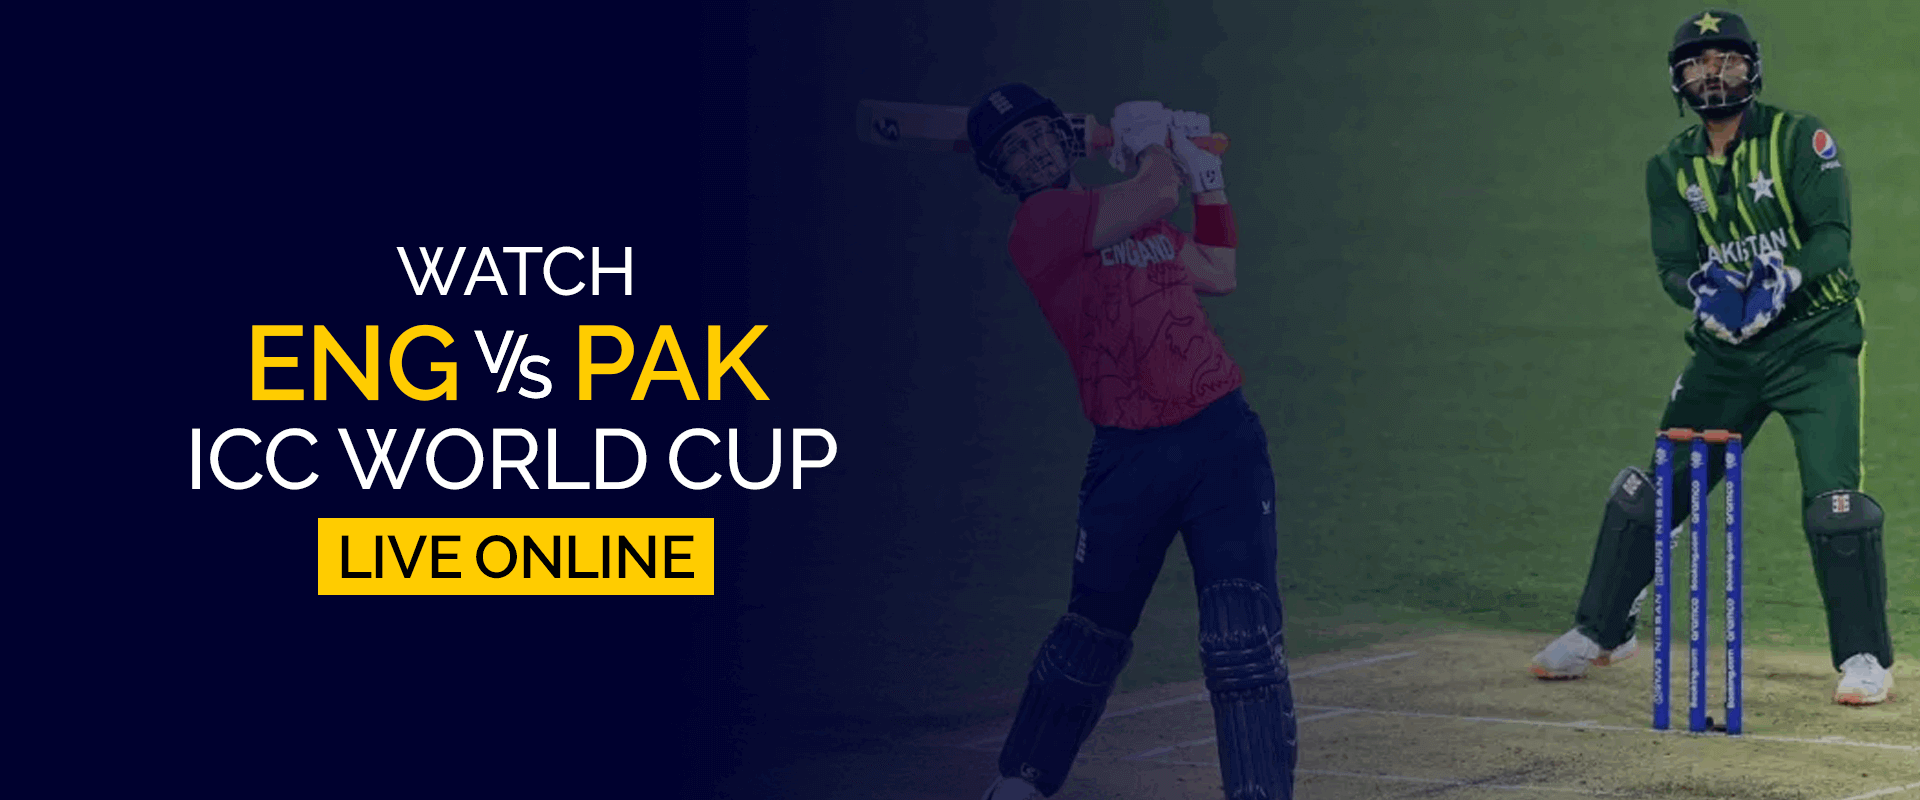 İngiltere vs Pakistan ICC Dünya Kupasını Canlı Çevrimiçi İzleyin